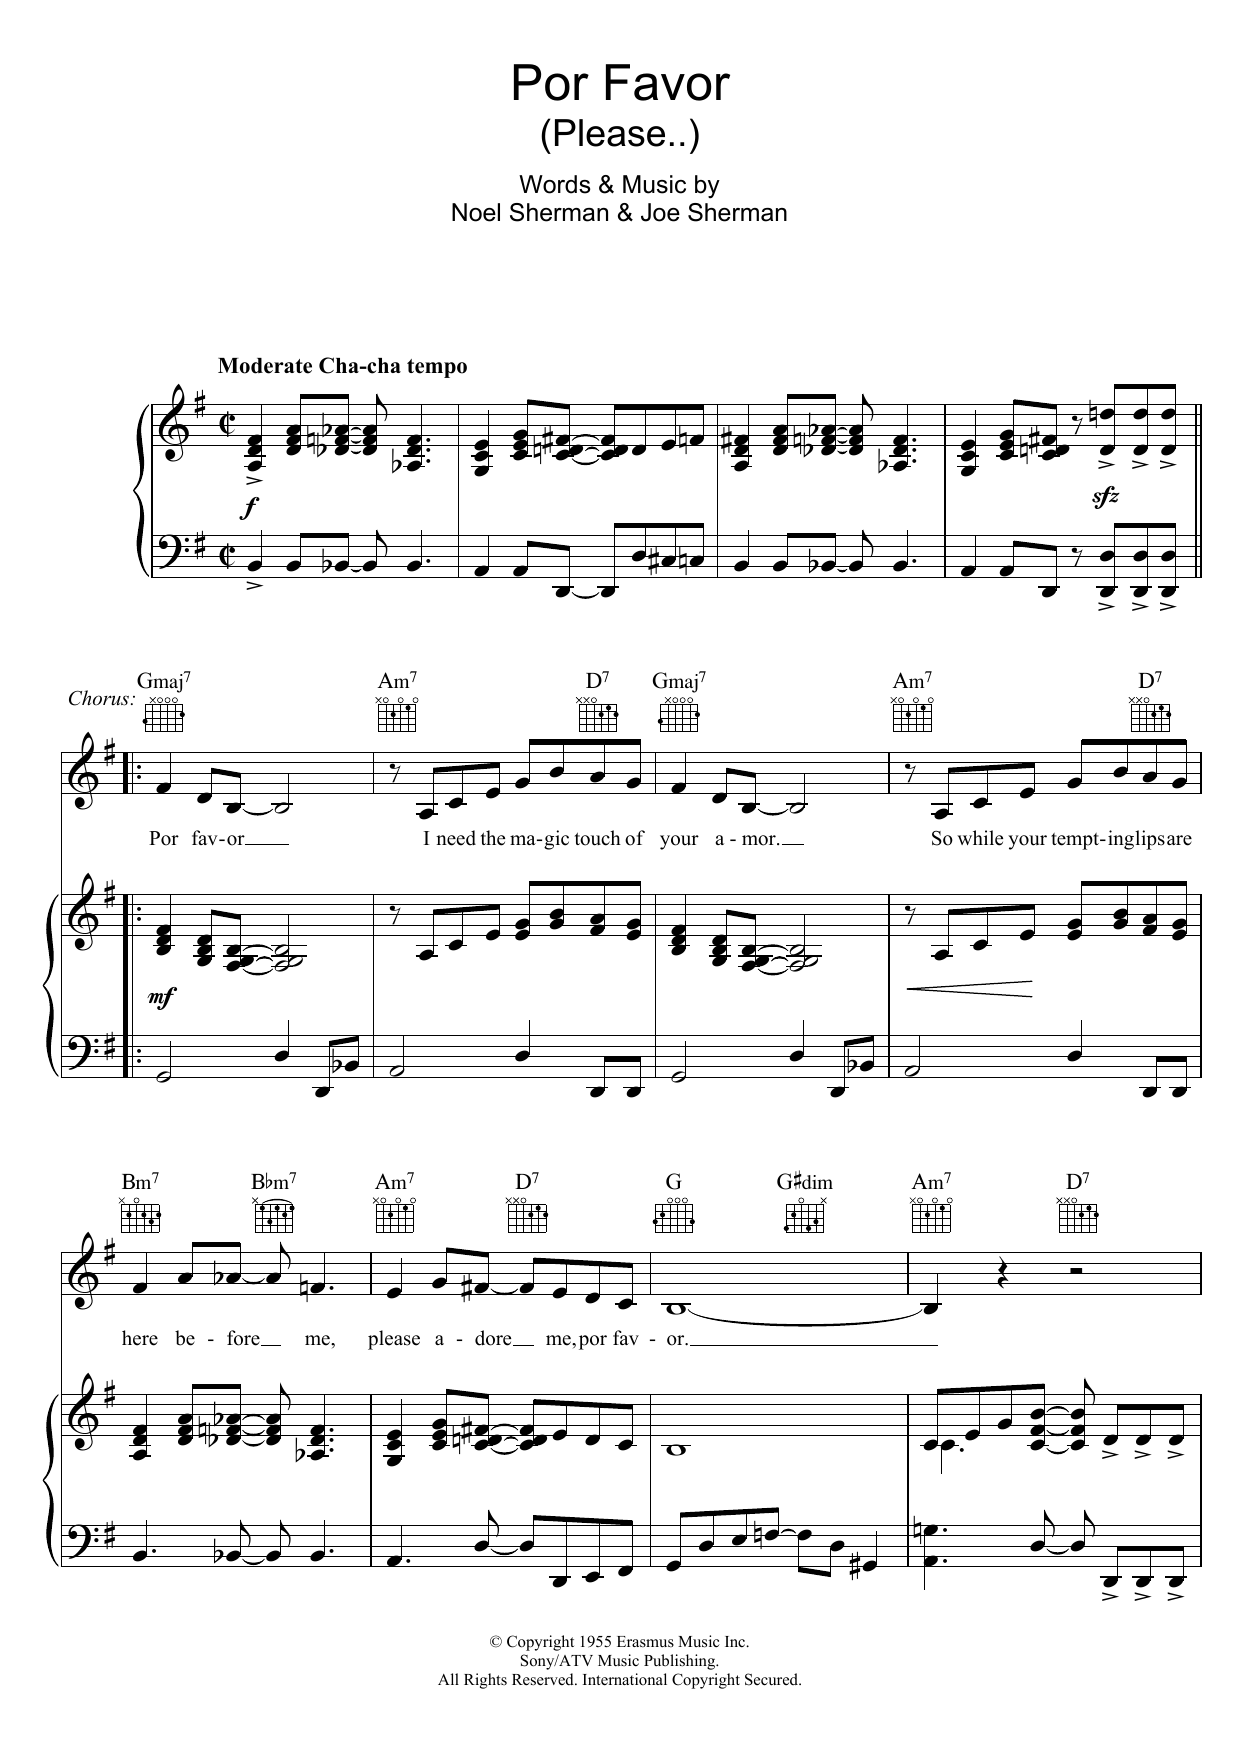 Doris Day Por Favor sheet music notes and chords arranged for Piano, Vocal & Guitar Chords